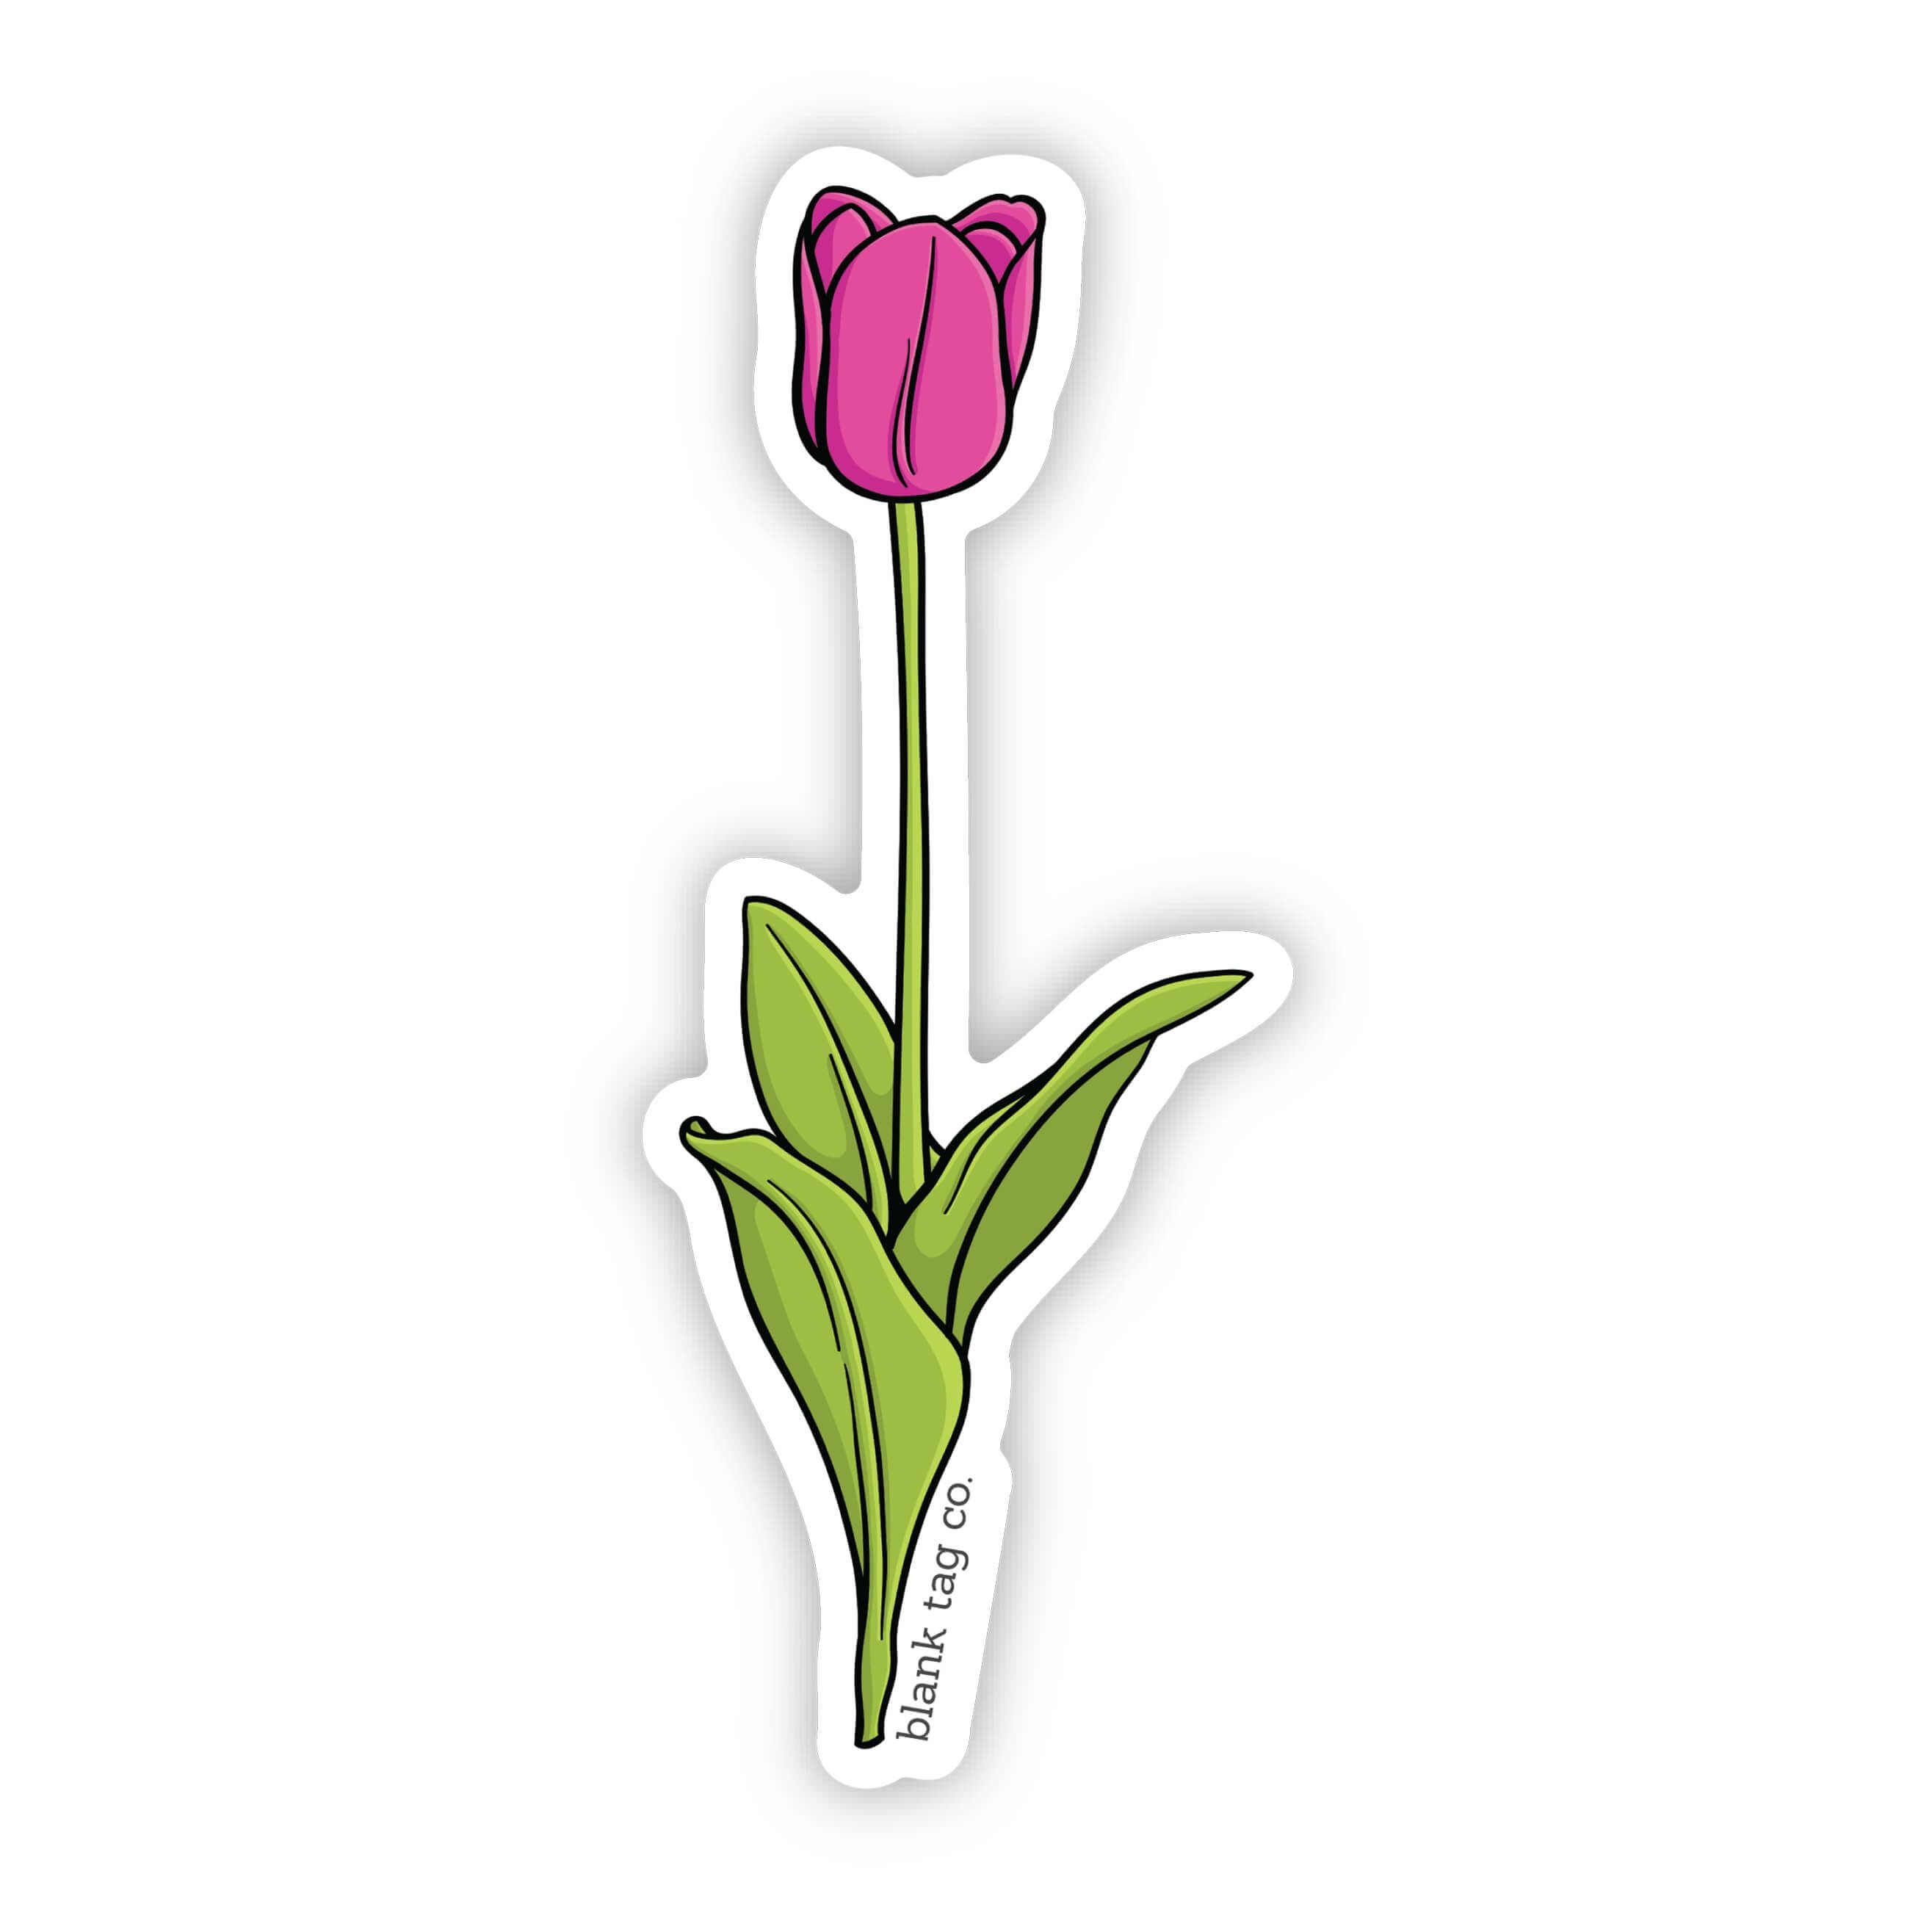 The Tulip Sticker